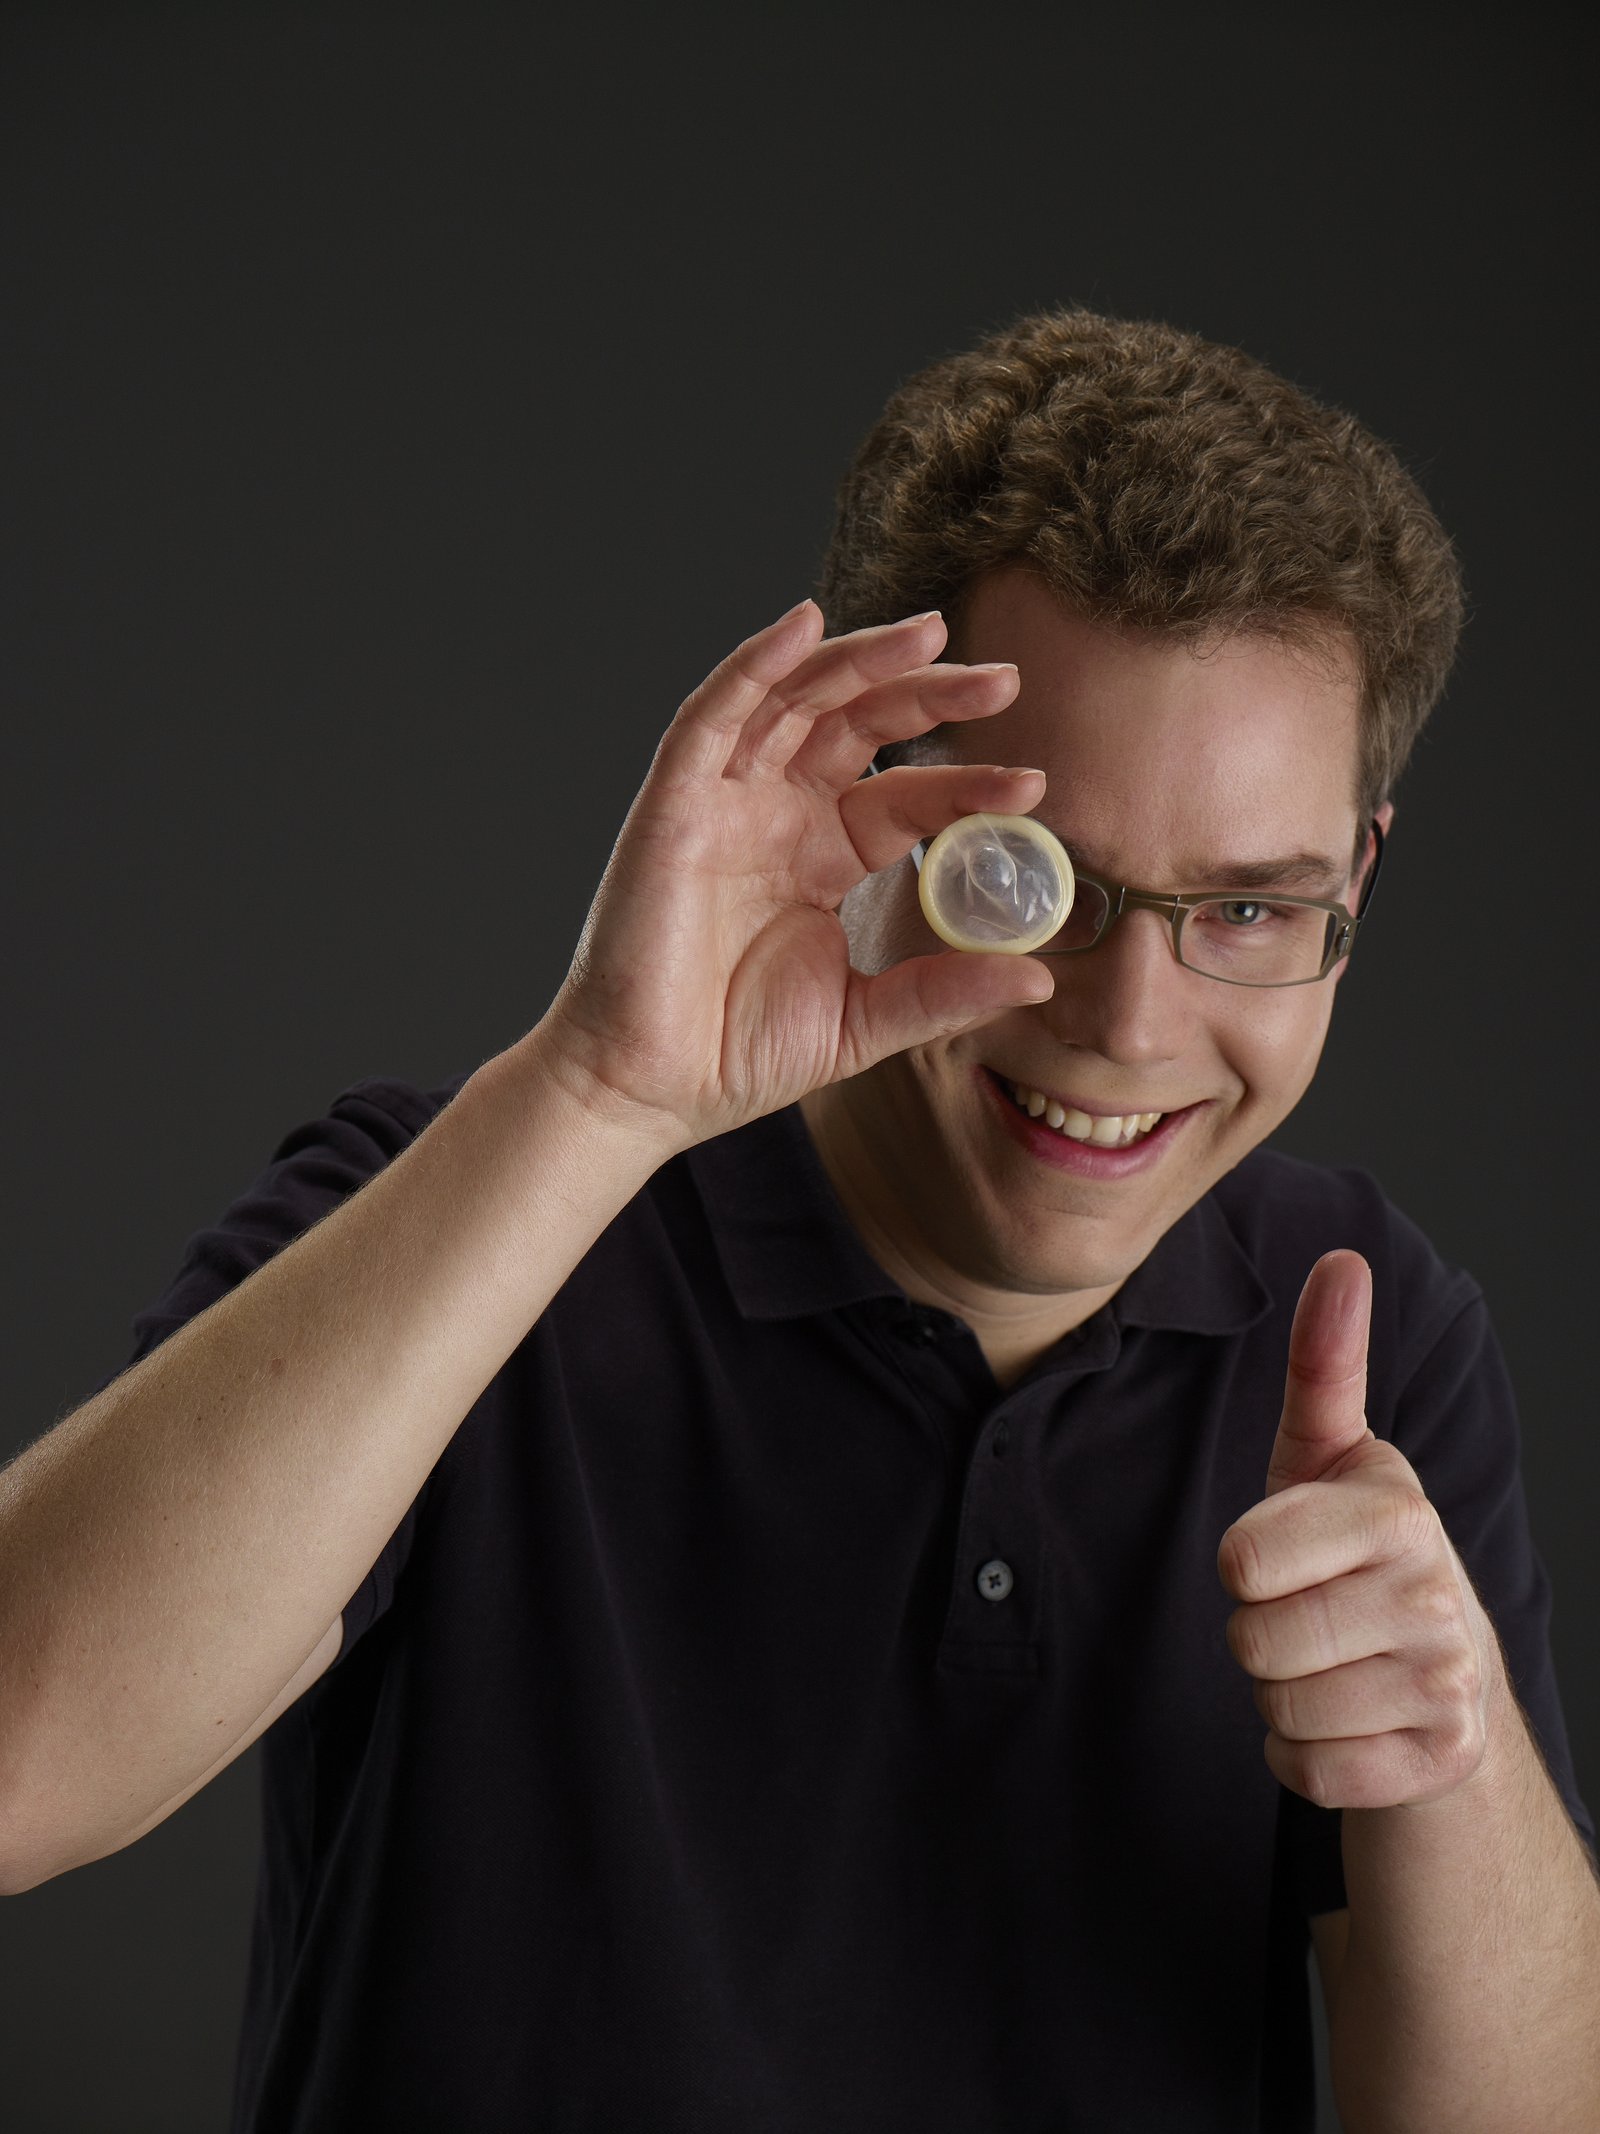 Jan Vinzenz Krause with condom